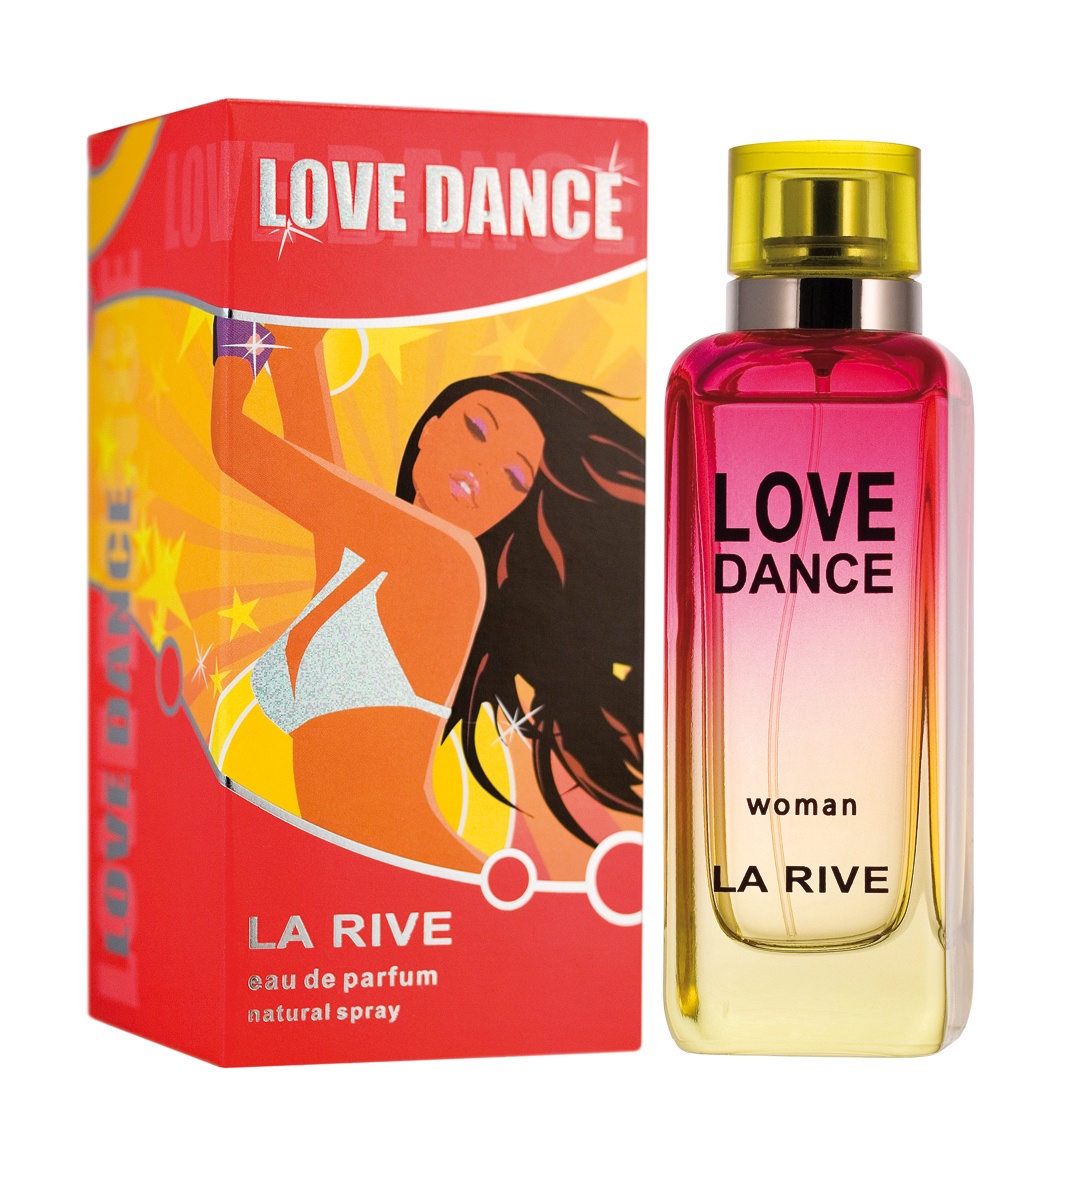 Туалетная вода dancing. La Rive туалетная вода женская. Духи Love Dance. La Rive Love Dance. Духи женские лав дэнс.